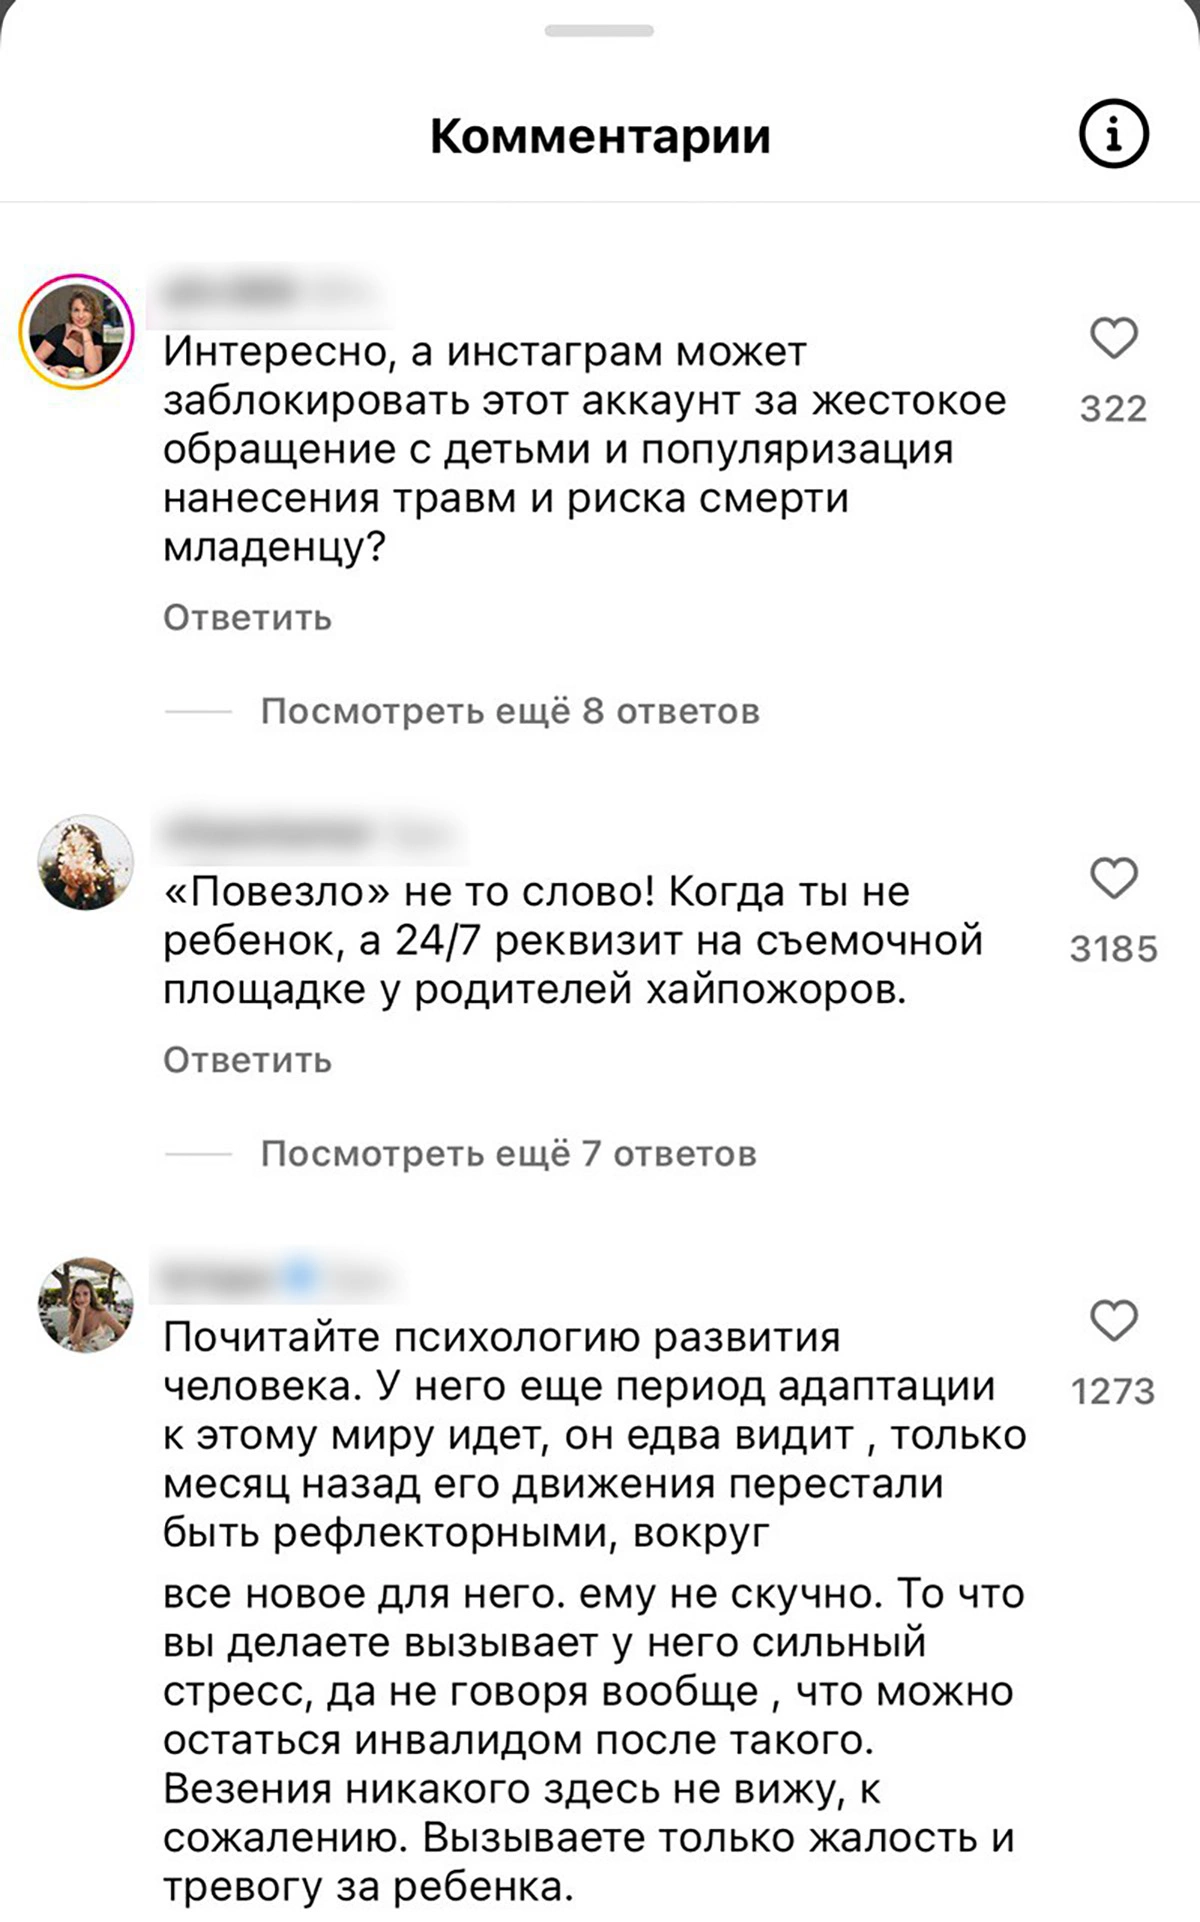 <p>Комментарии пользователей под публикациями Сергея Косенко&nbsp;</p>